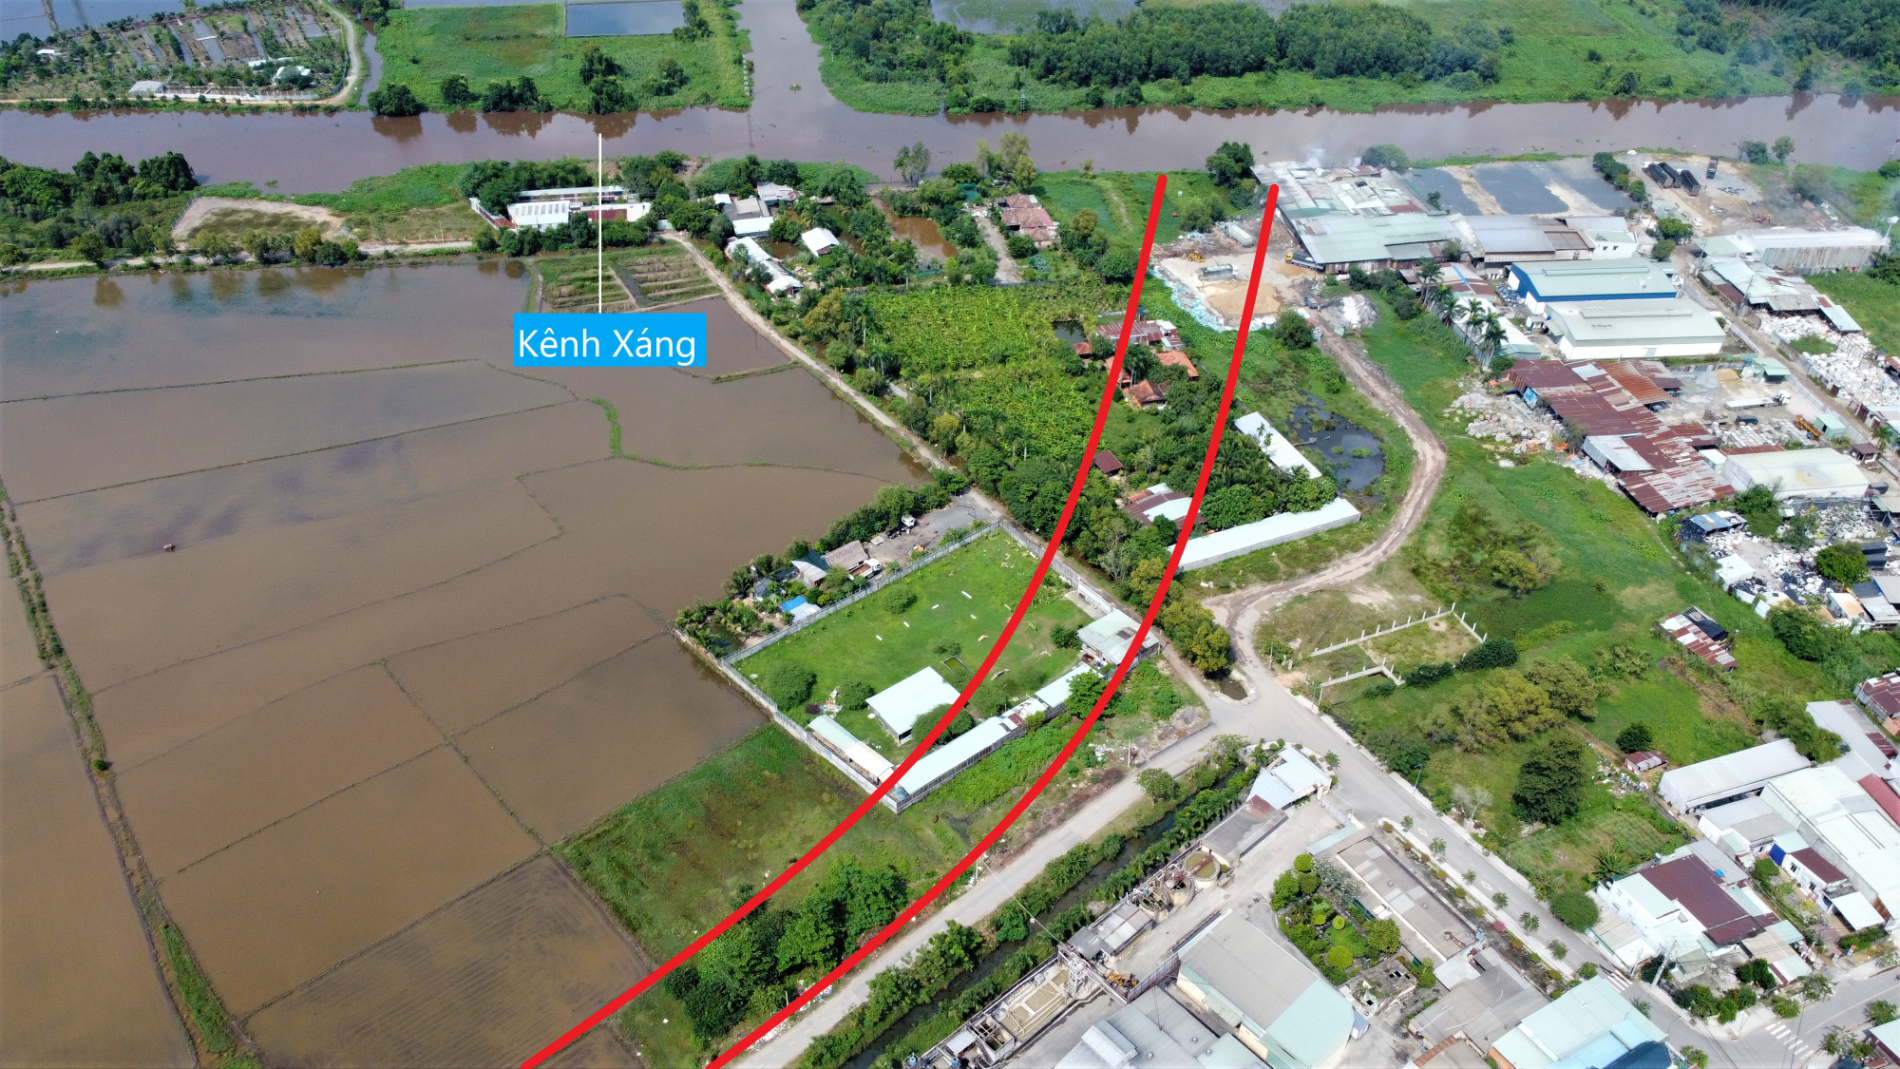 Toàn cảnh đường vành đai 3 sẽ mở theo quy hoạch tại xã Tân Hiệp, Hóc Môn, TP HCM